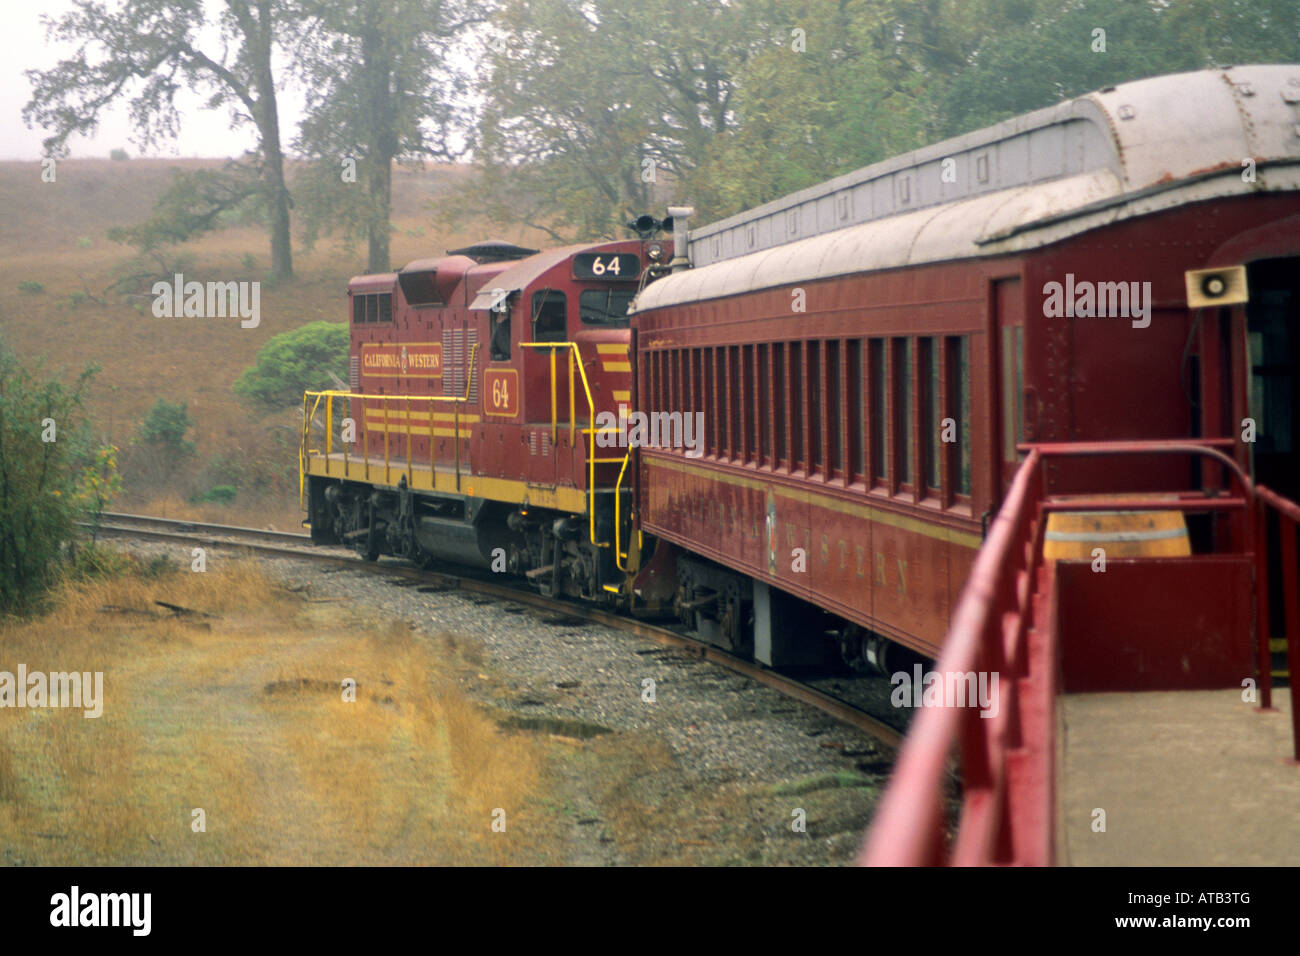 The Skunk Train Willits Mendocino County California Stock Photo